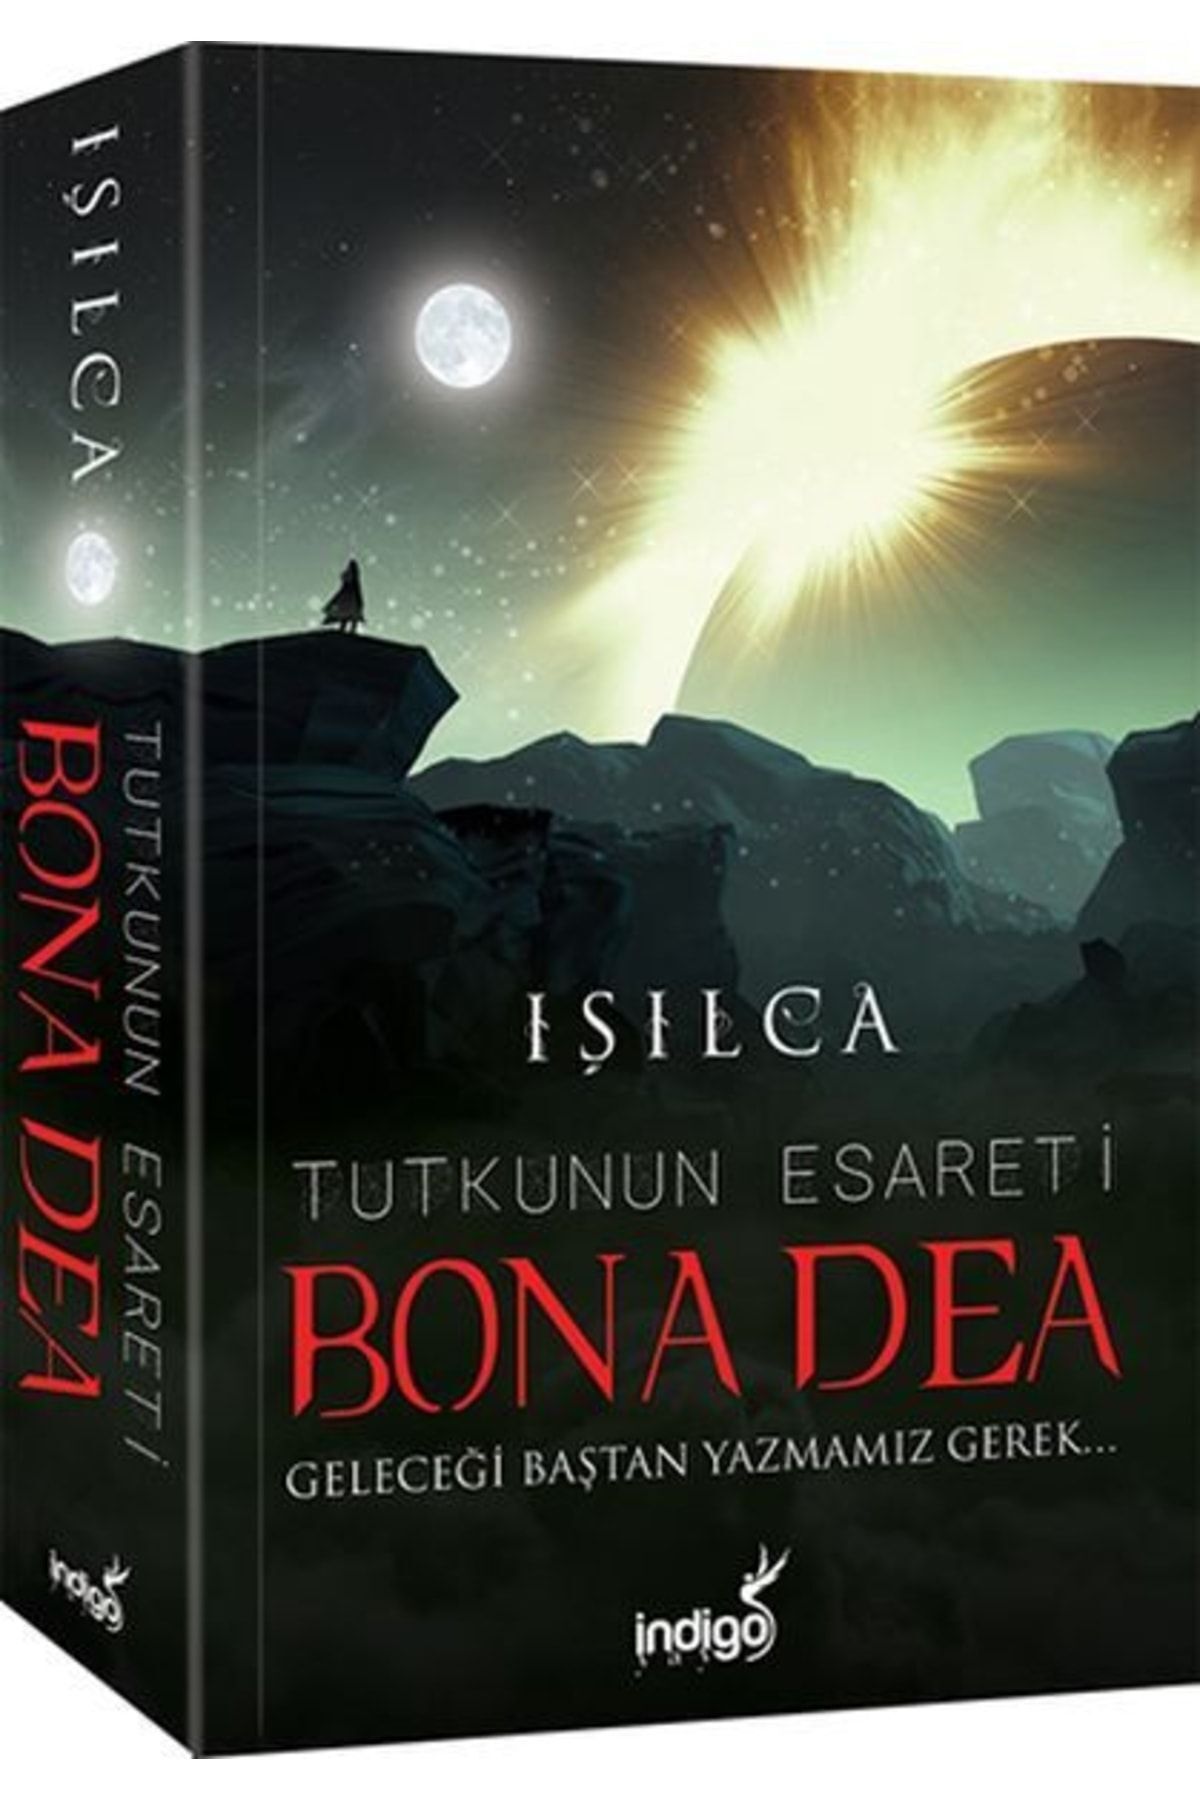 İndigo Kitap Bona Dea - Tutkunun Esareti - Işıl Parlakyıldız (ışılca) - Indigo Kitap